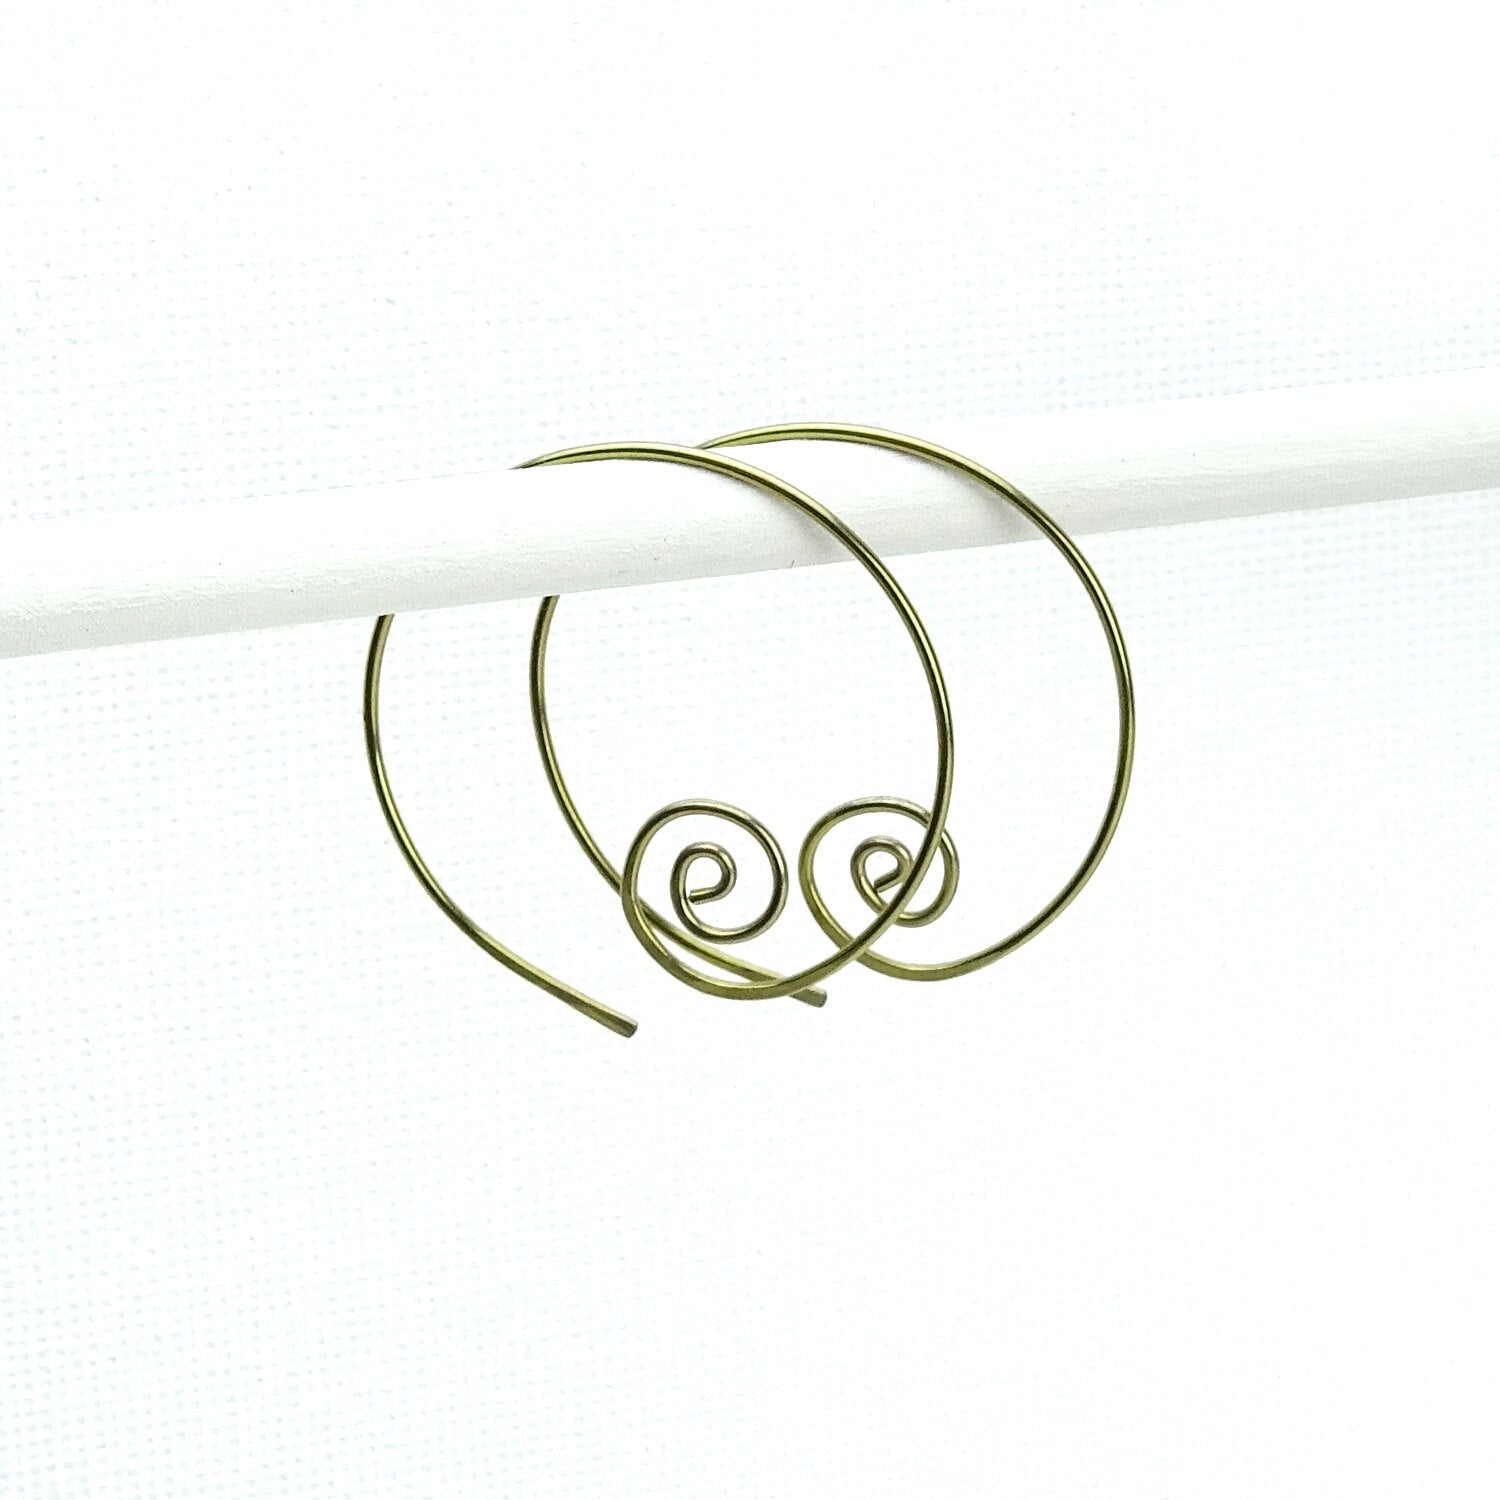 Niobium Hoops Spirals Gold Niobium Spiral Hoop Earrings, Hypoallergenic Hoops for Sensitive Ears, Niobium Hoops